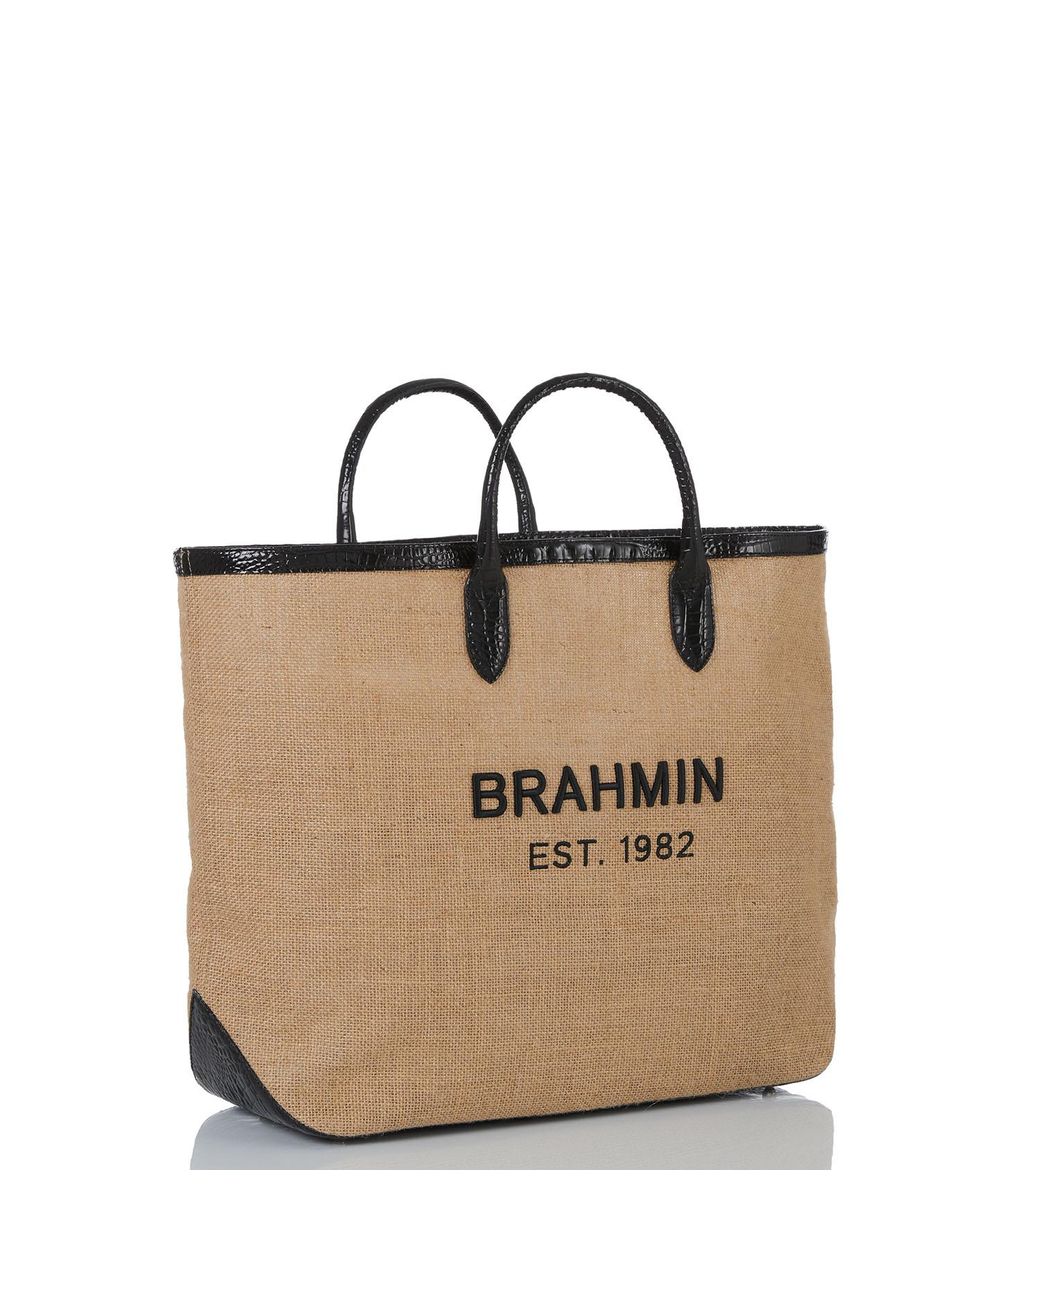 Brahmin Brooklyn in Brown